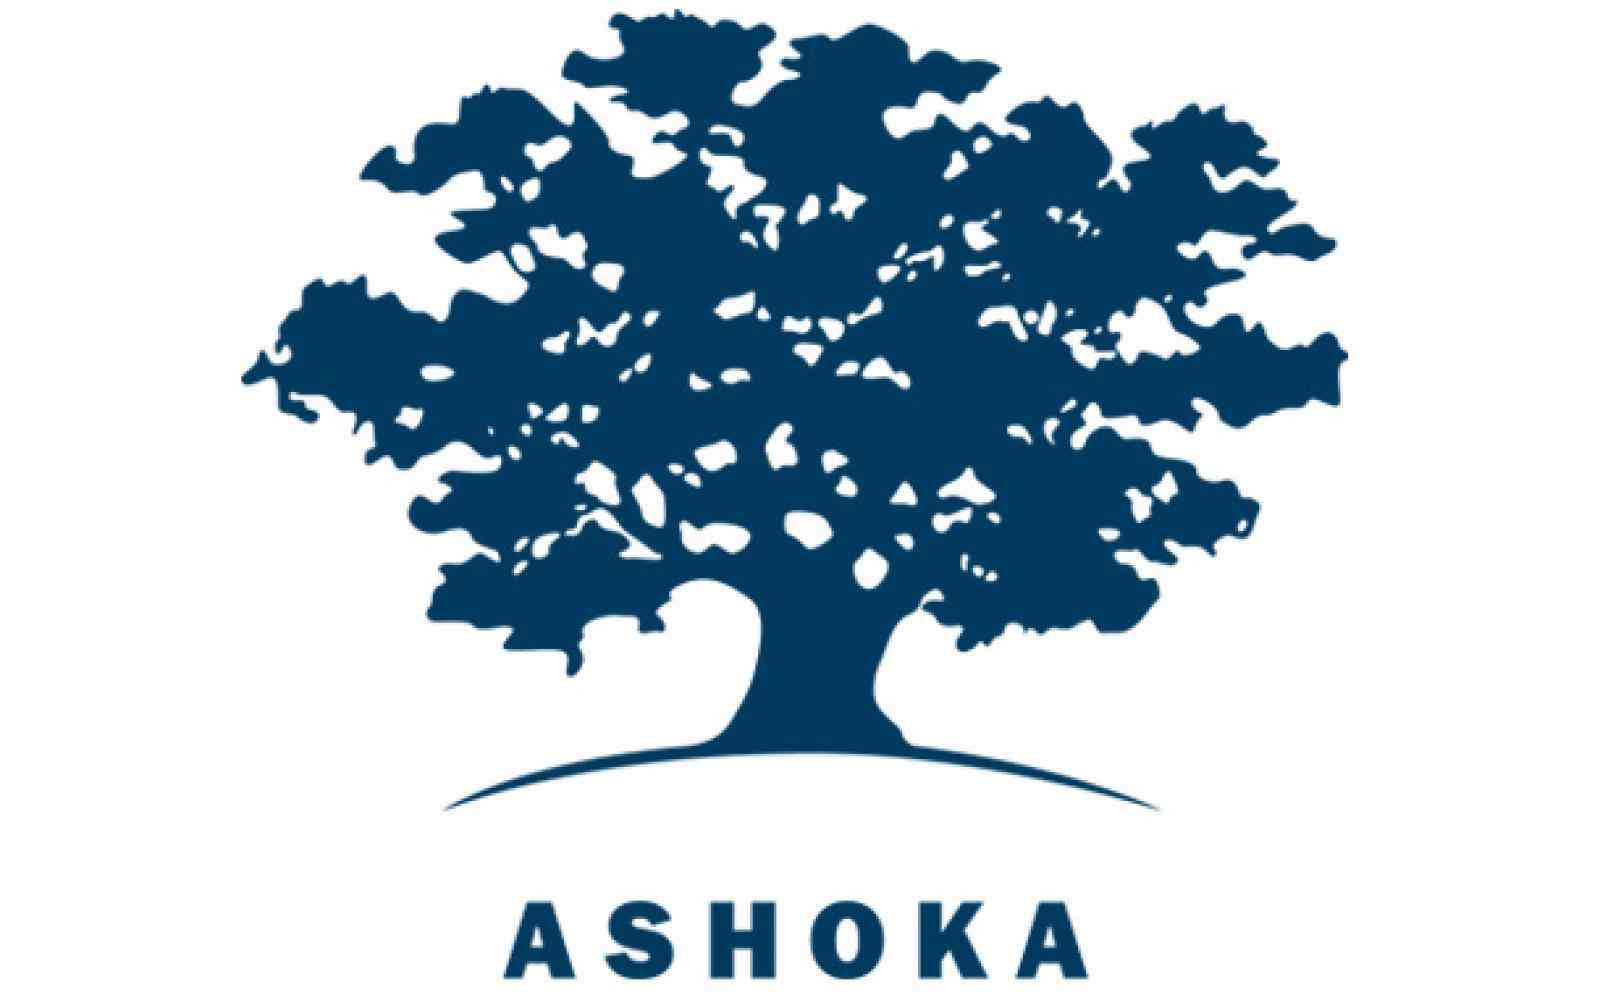 ashoka-logo-hero.jpg